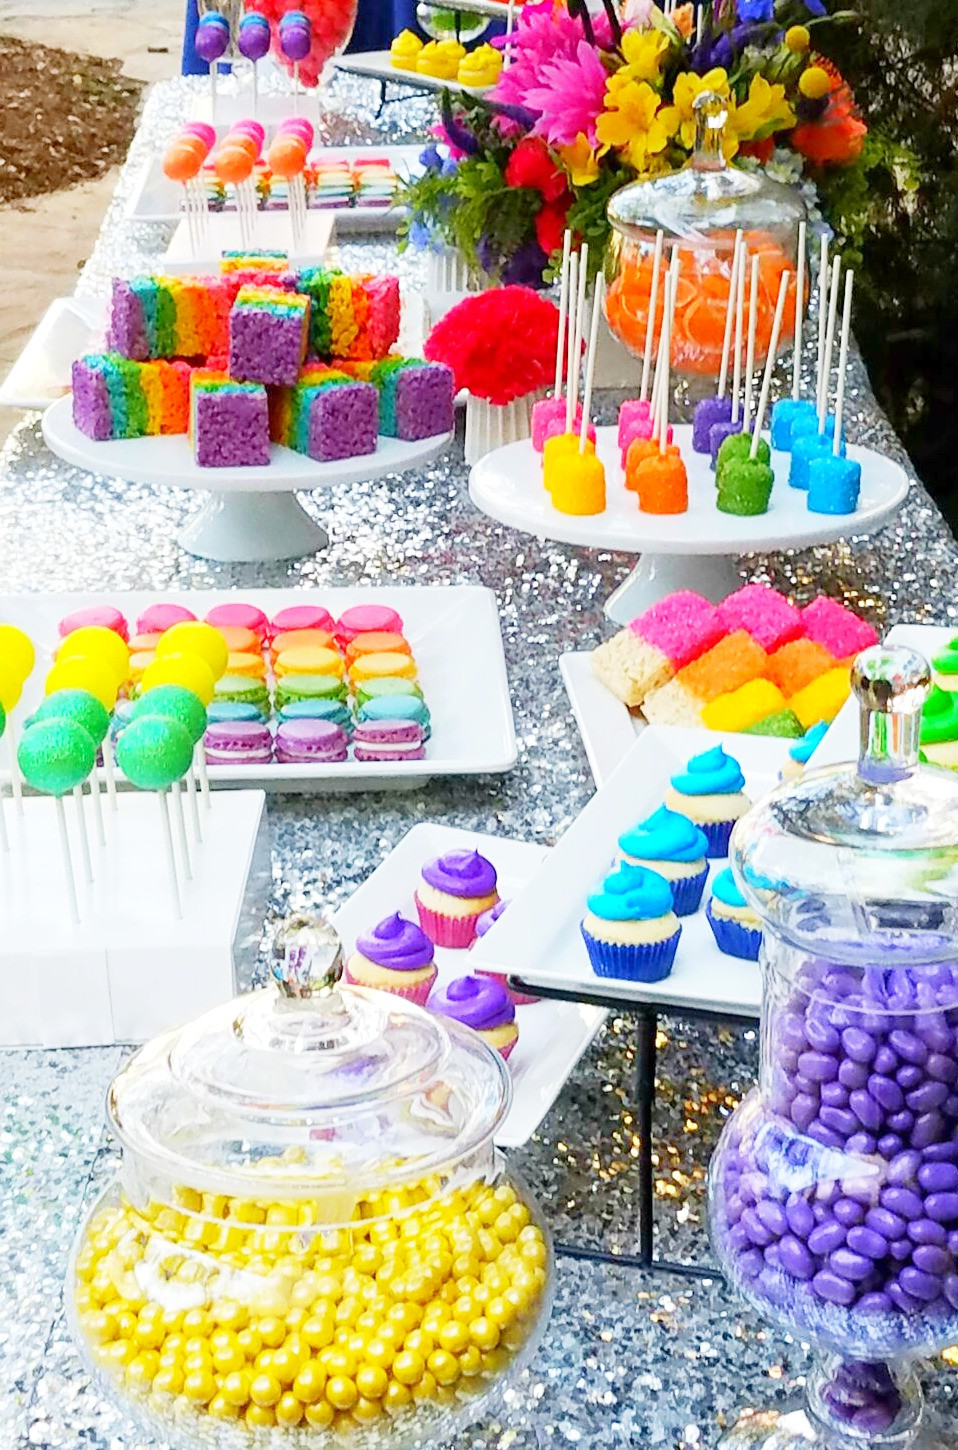 Dreamworks Trolls Birthday Party Ideas
 DREAMWORKS TROLLS THE BEAT GOES ON Birthday Party Candy